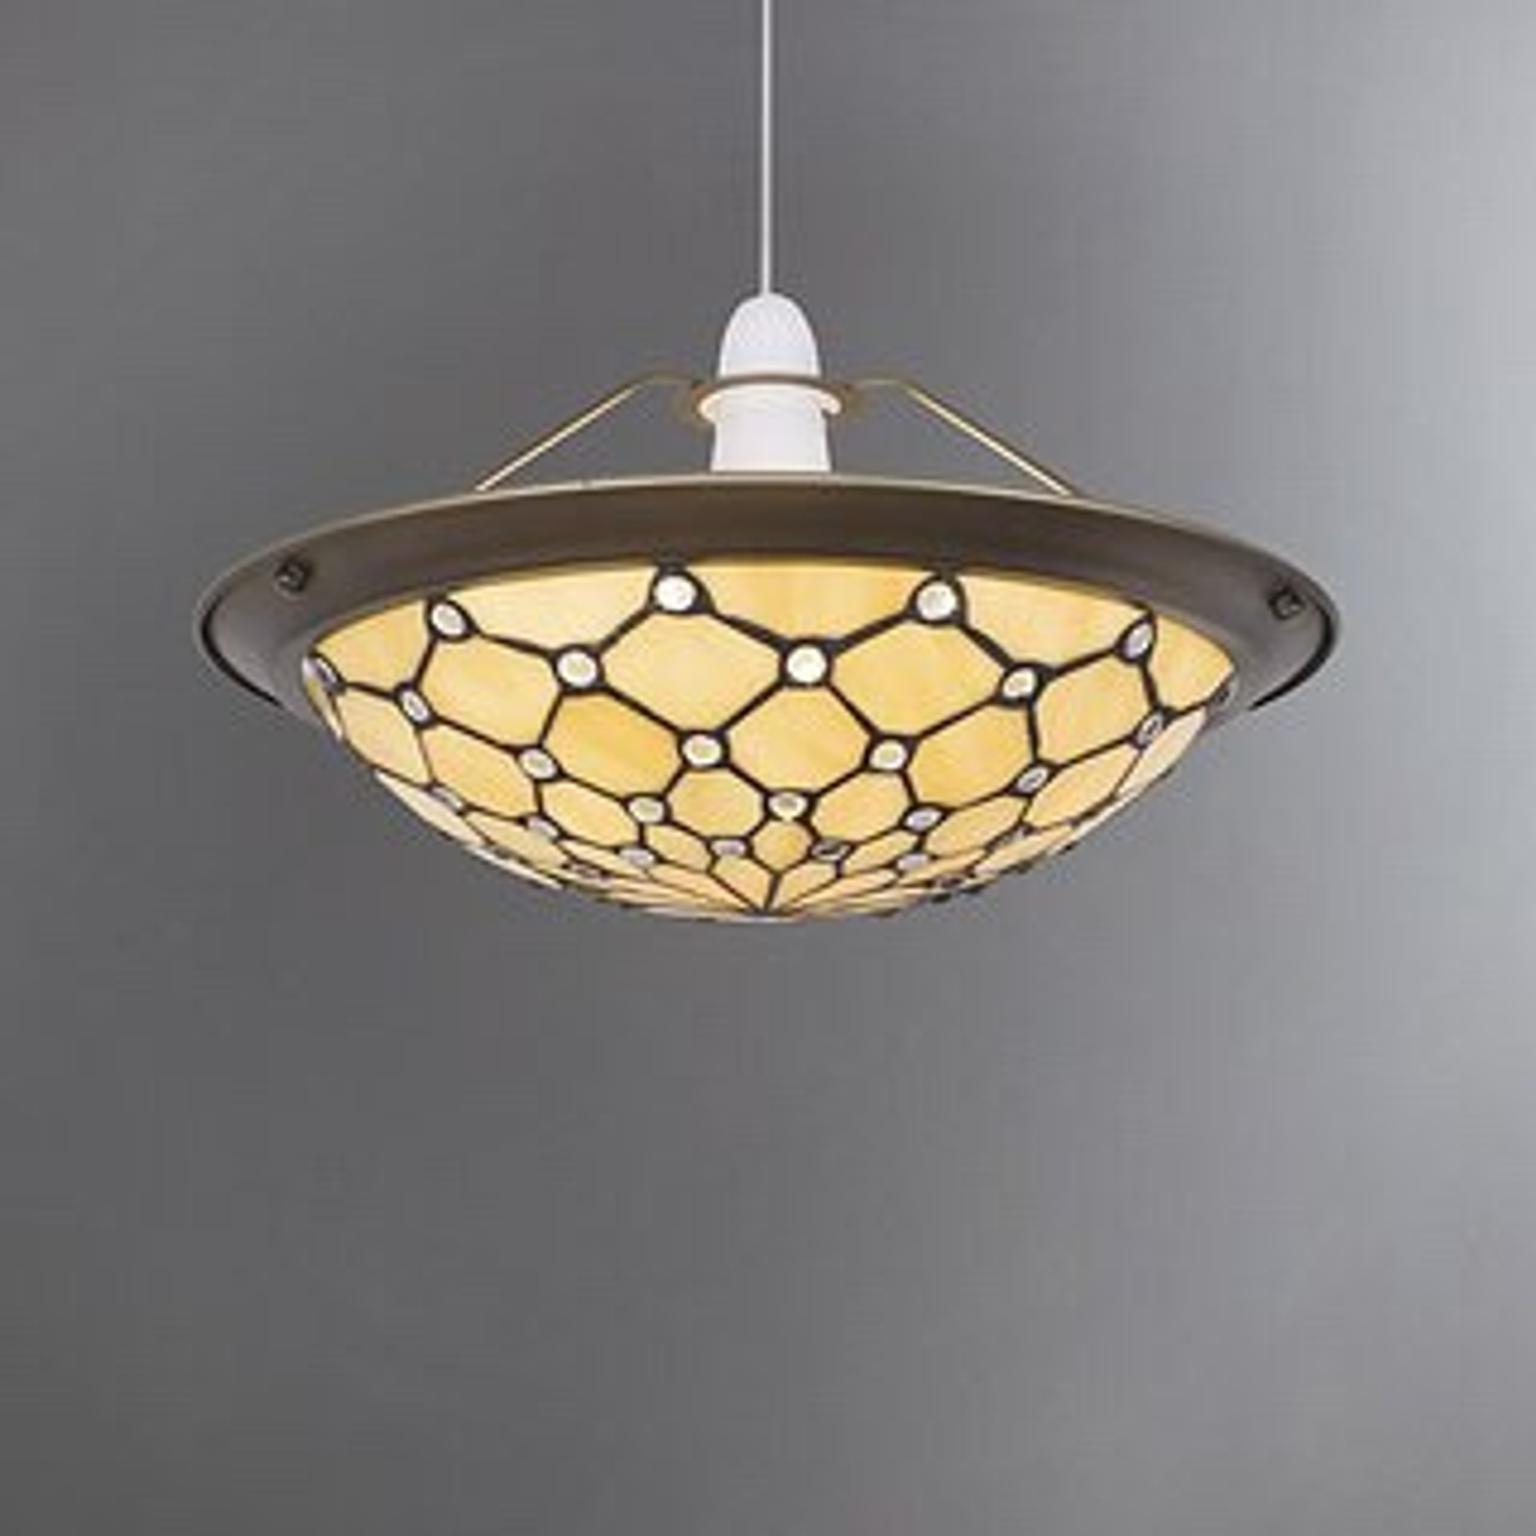 Tiffany Uplighter Pendant Ceiling Light Shade